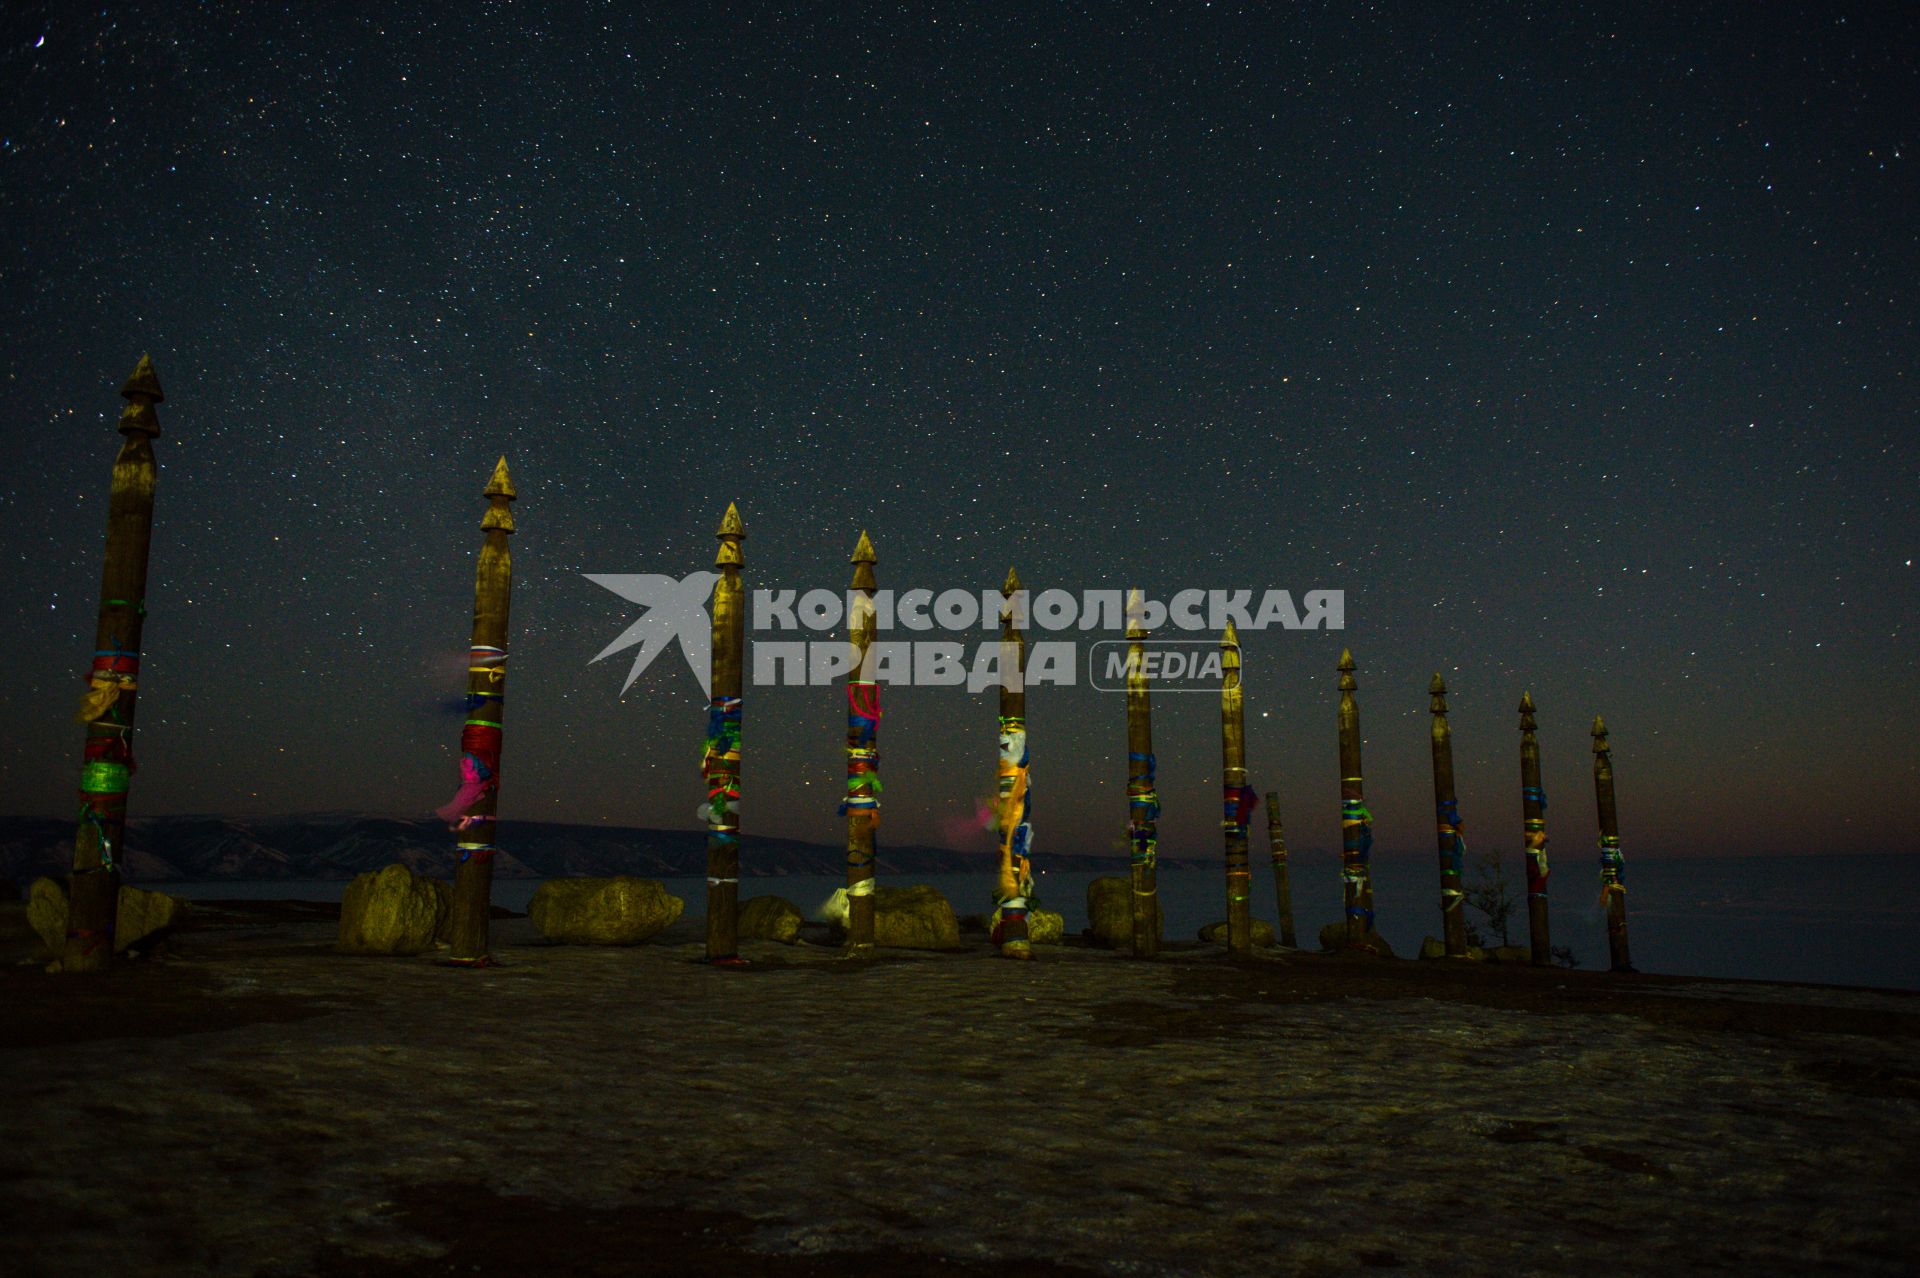 Иркутская область, озеро Байкал, остров Ольхон.  Звездное небо над  озером Байкал.